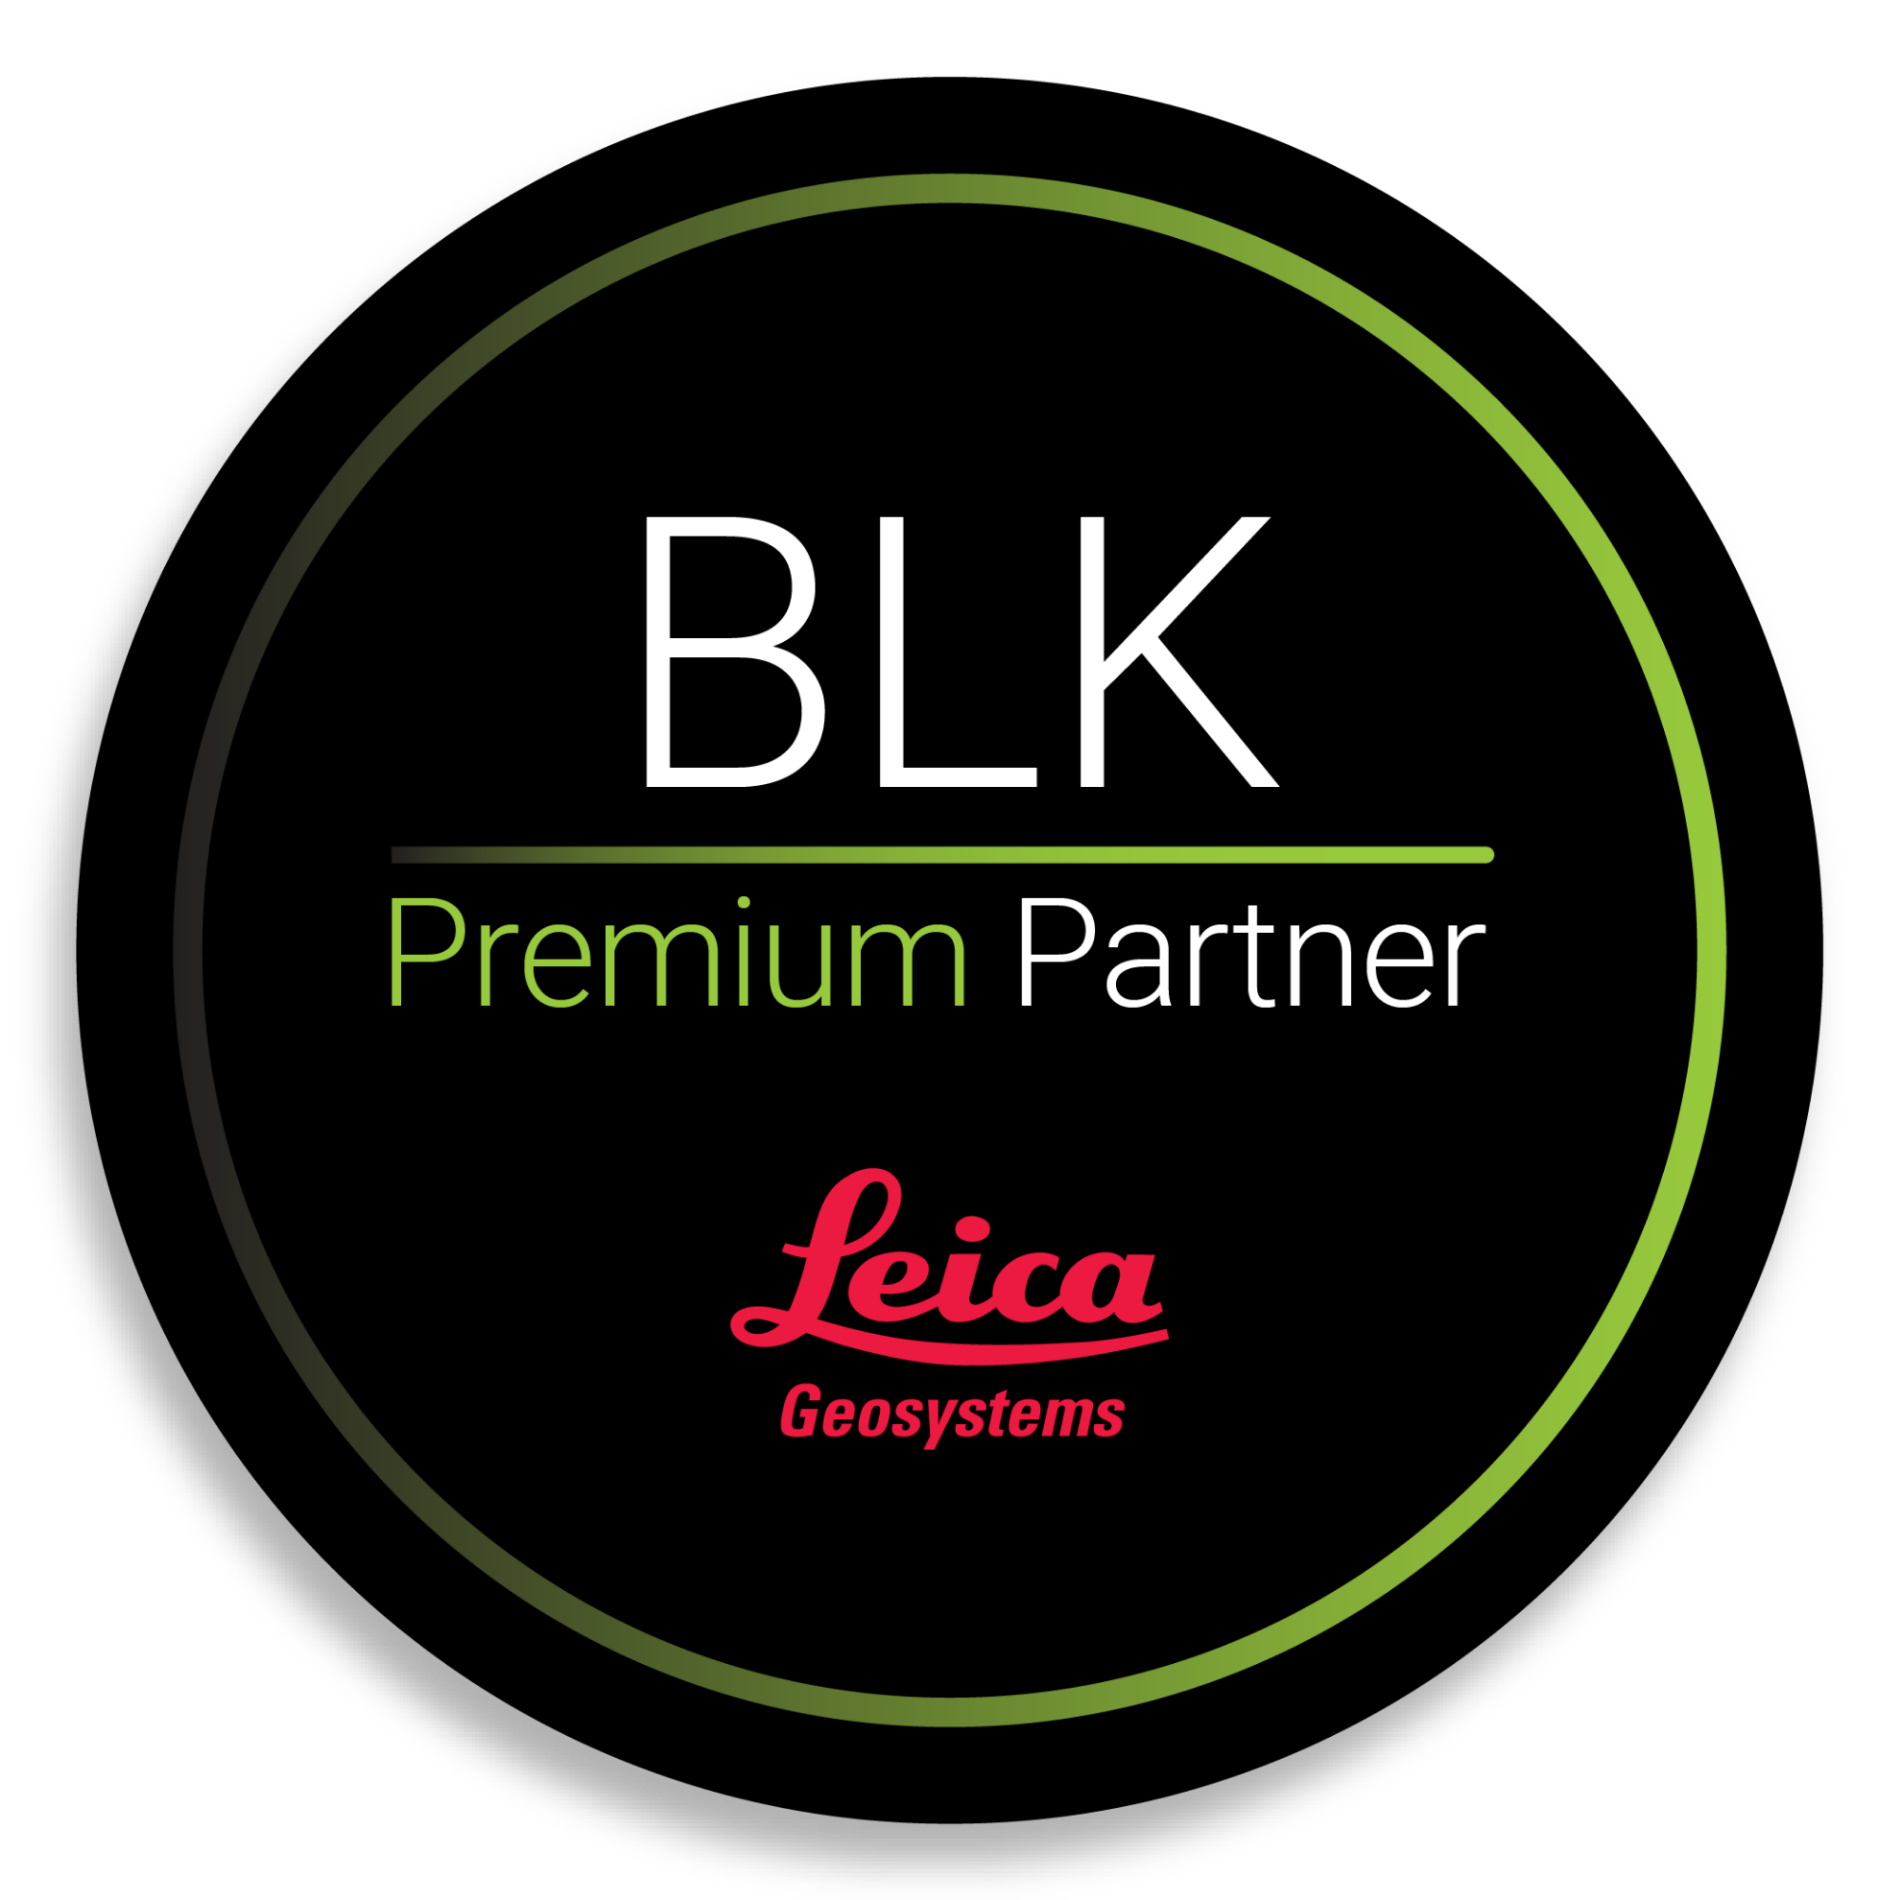 BLK Premium Partner Graphic